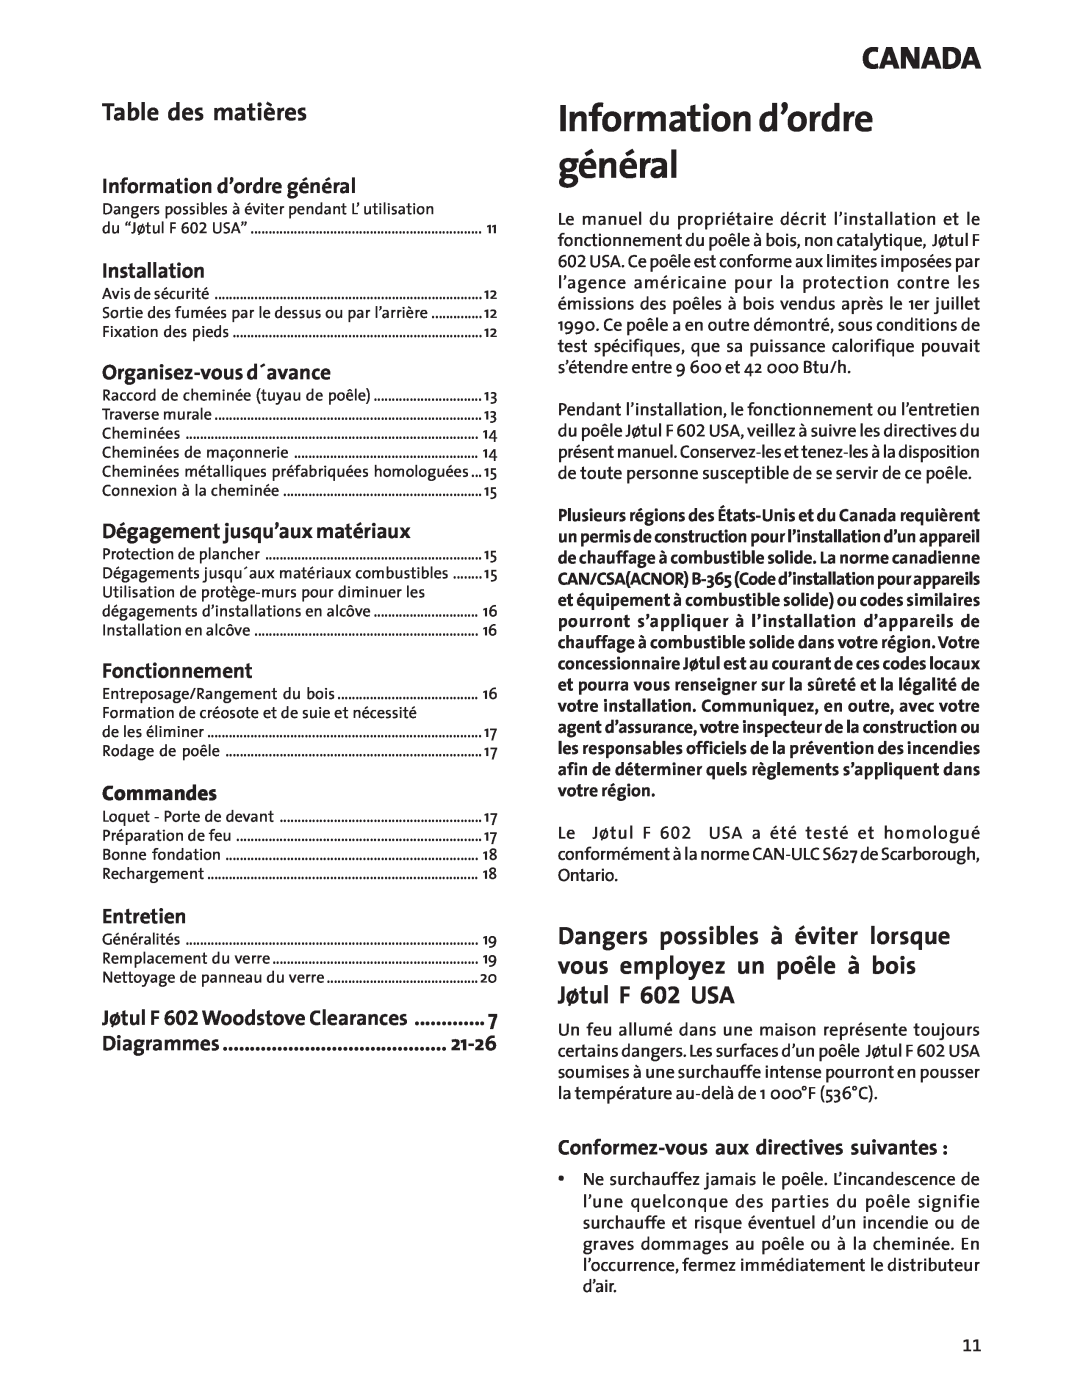 Jotul Wood Stove Information d’ordre général, Canada, Table des matières, Installation, Organisez-vousd´avance, Commandes 